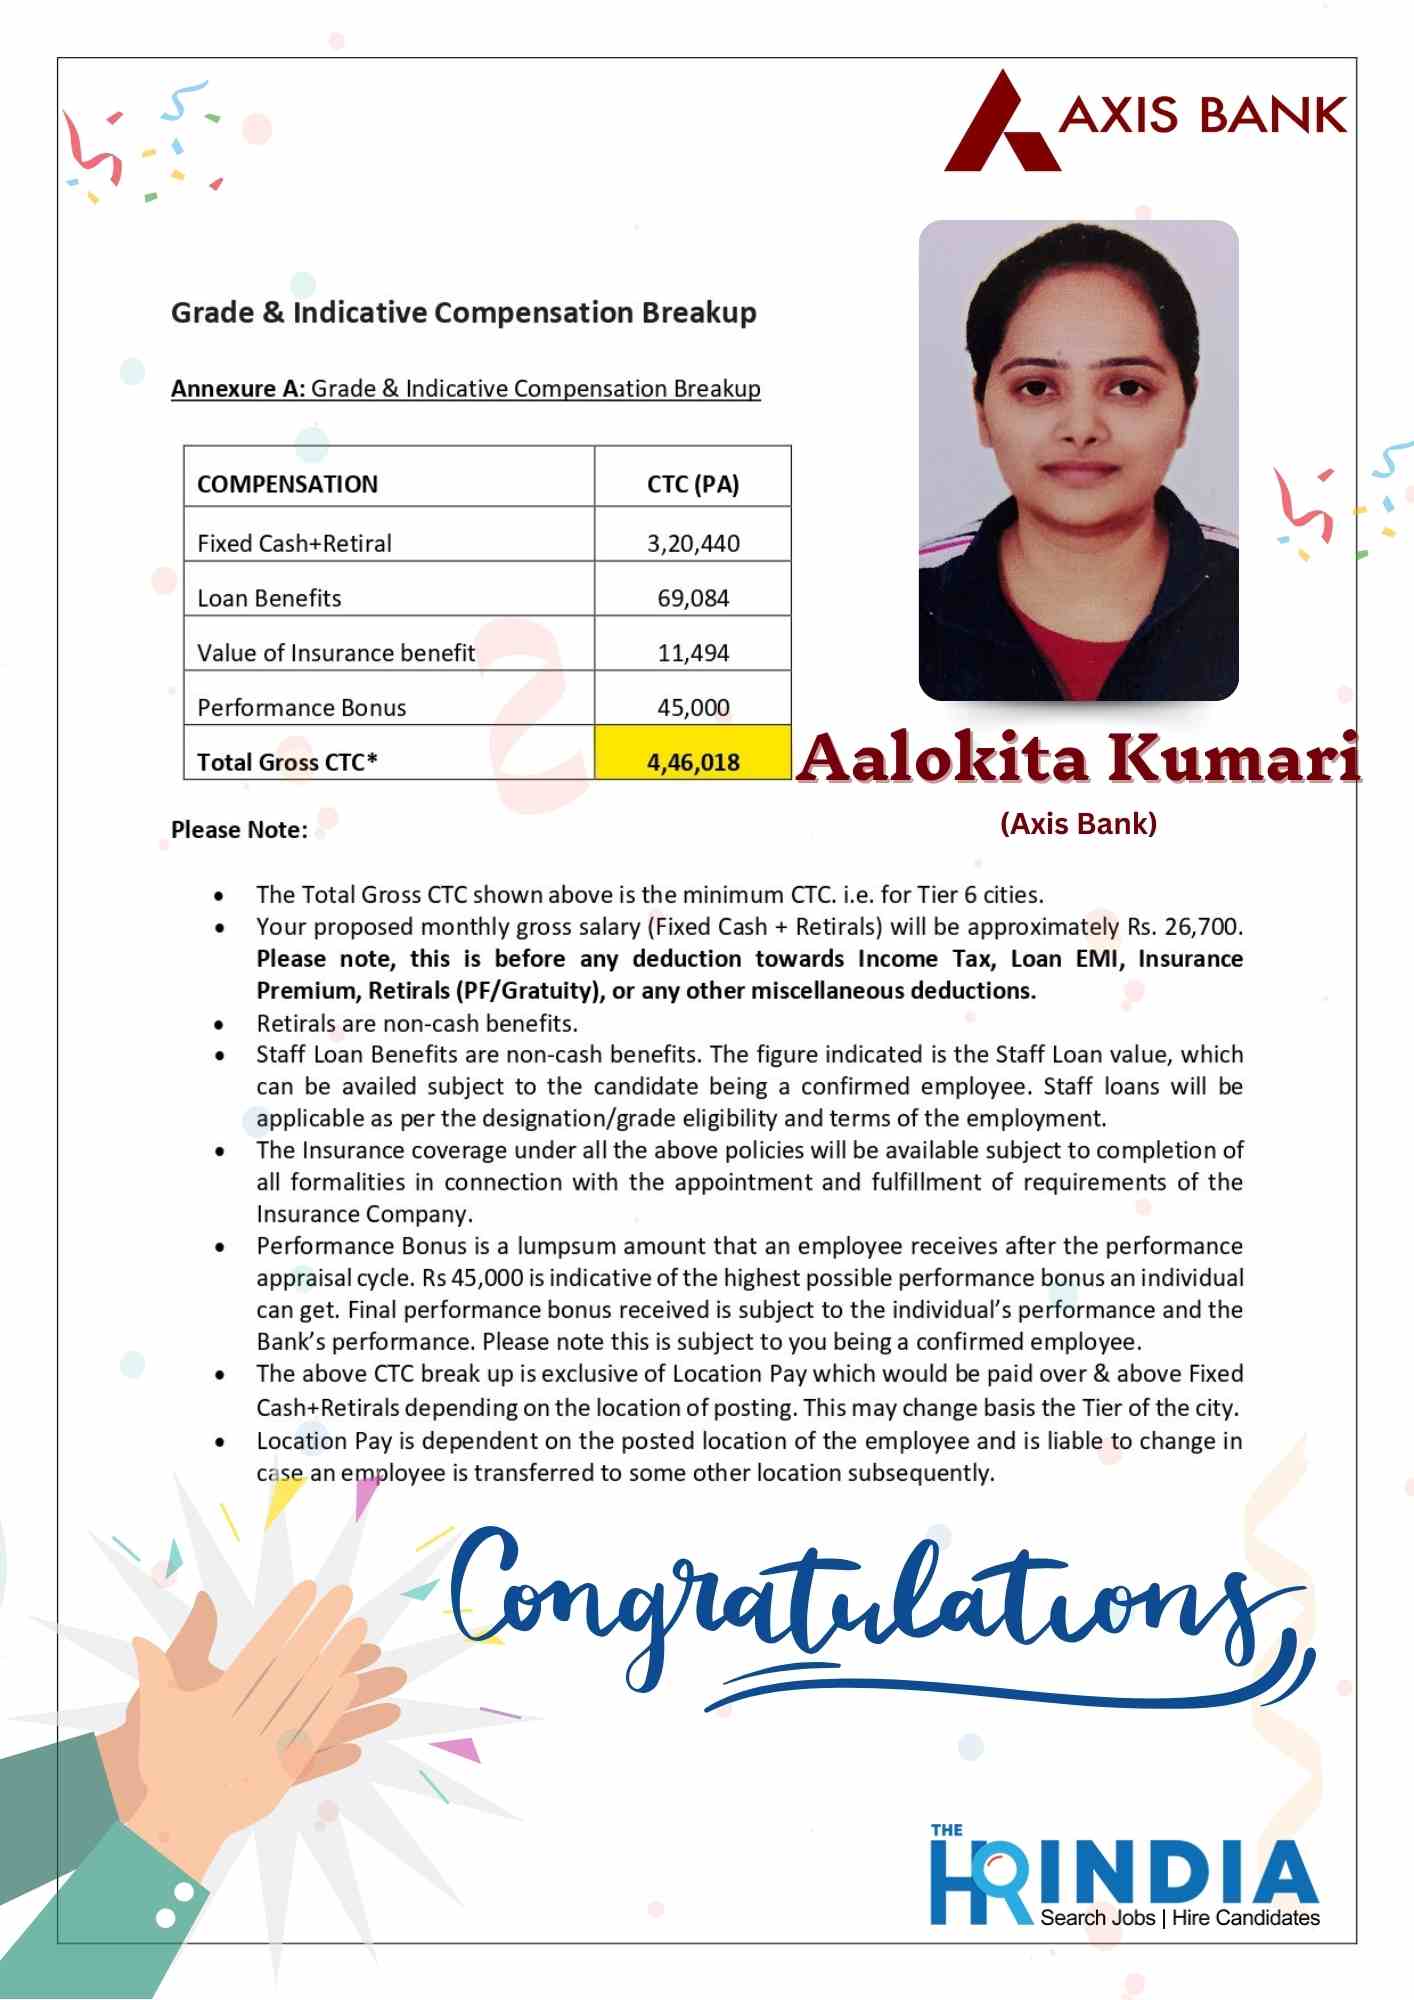 Aalokita Kumari  | The HR India